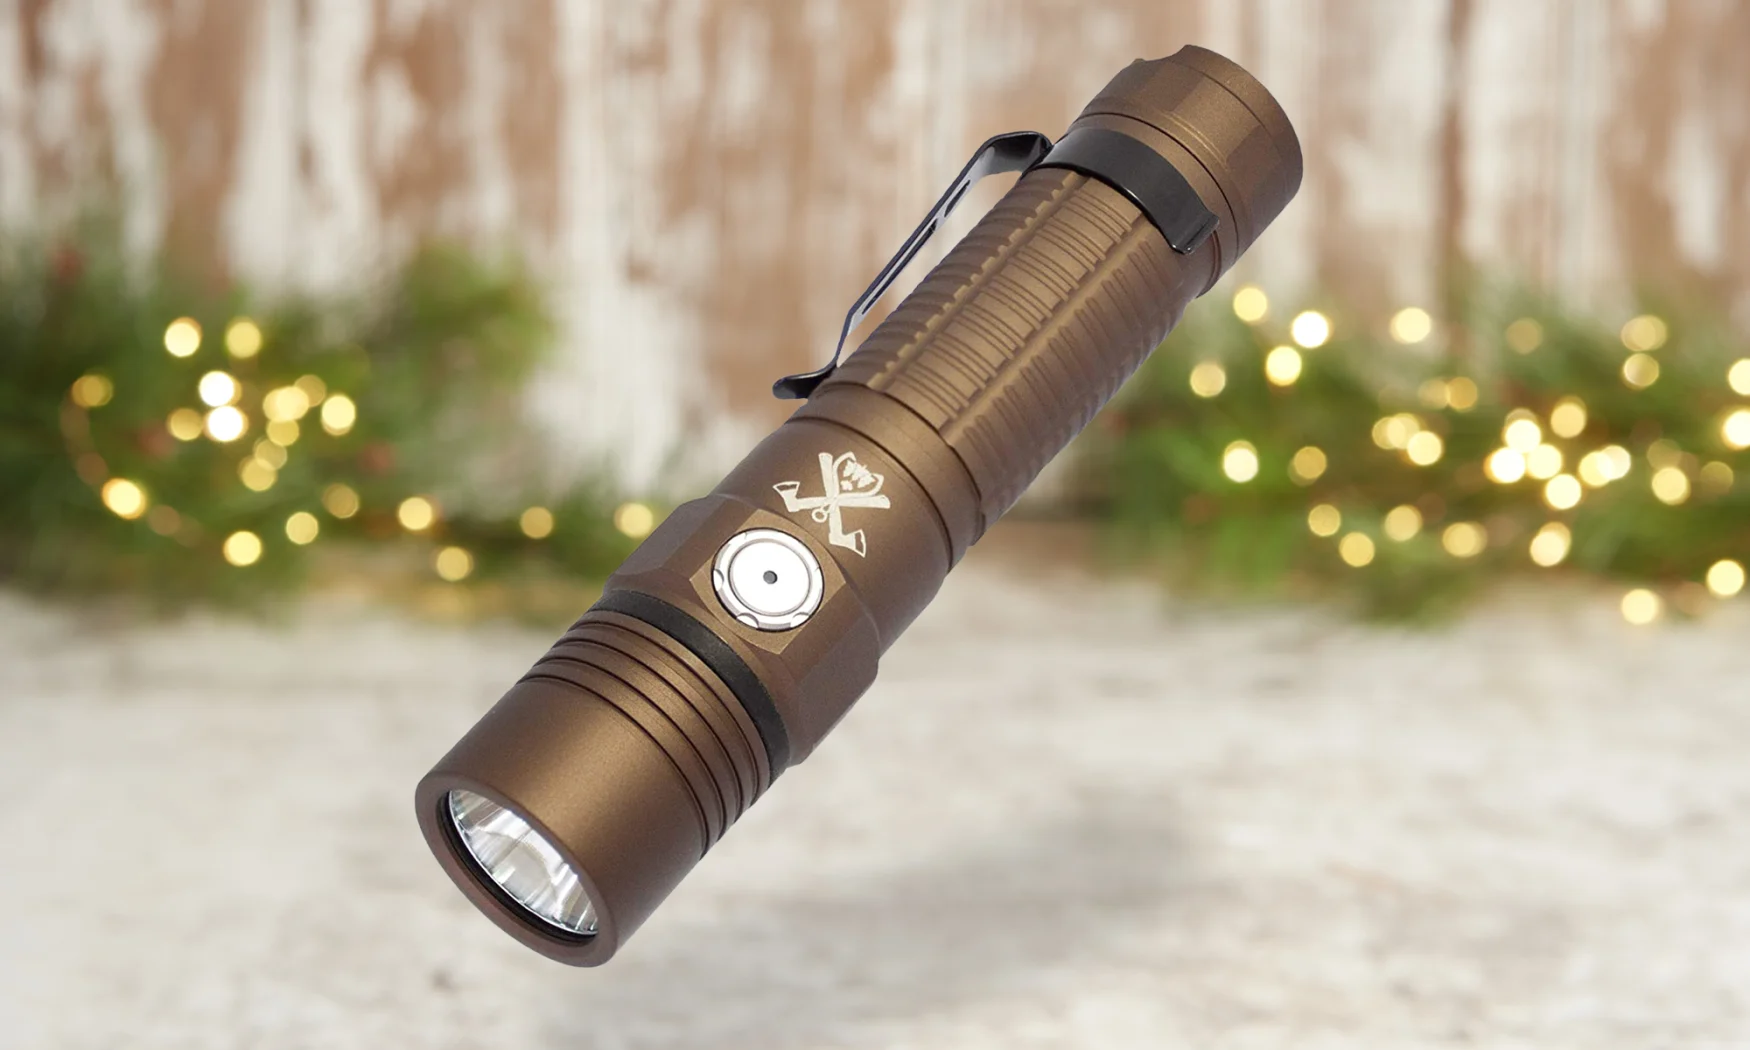 ThruNite TC15 V2 2531 flashlight